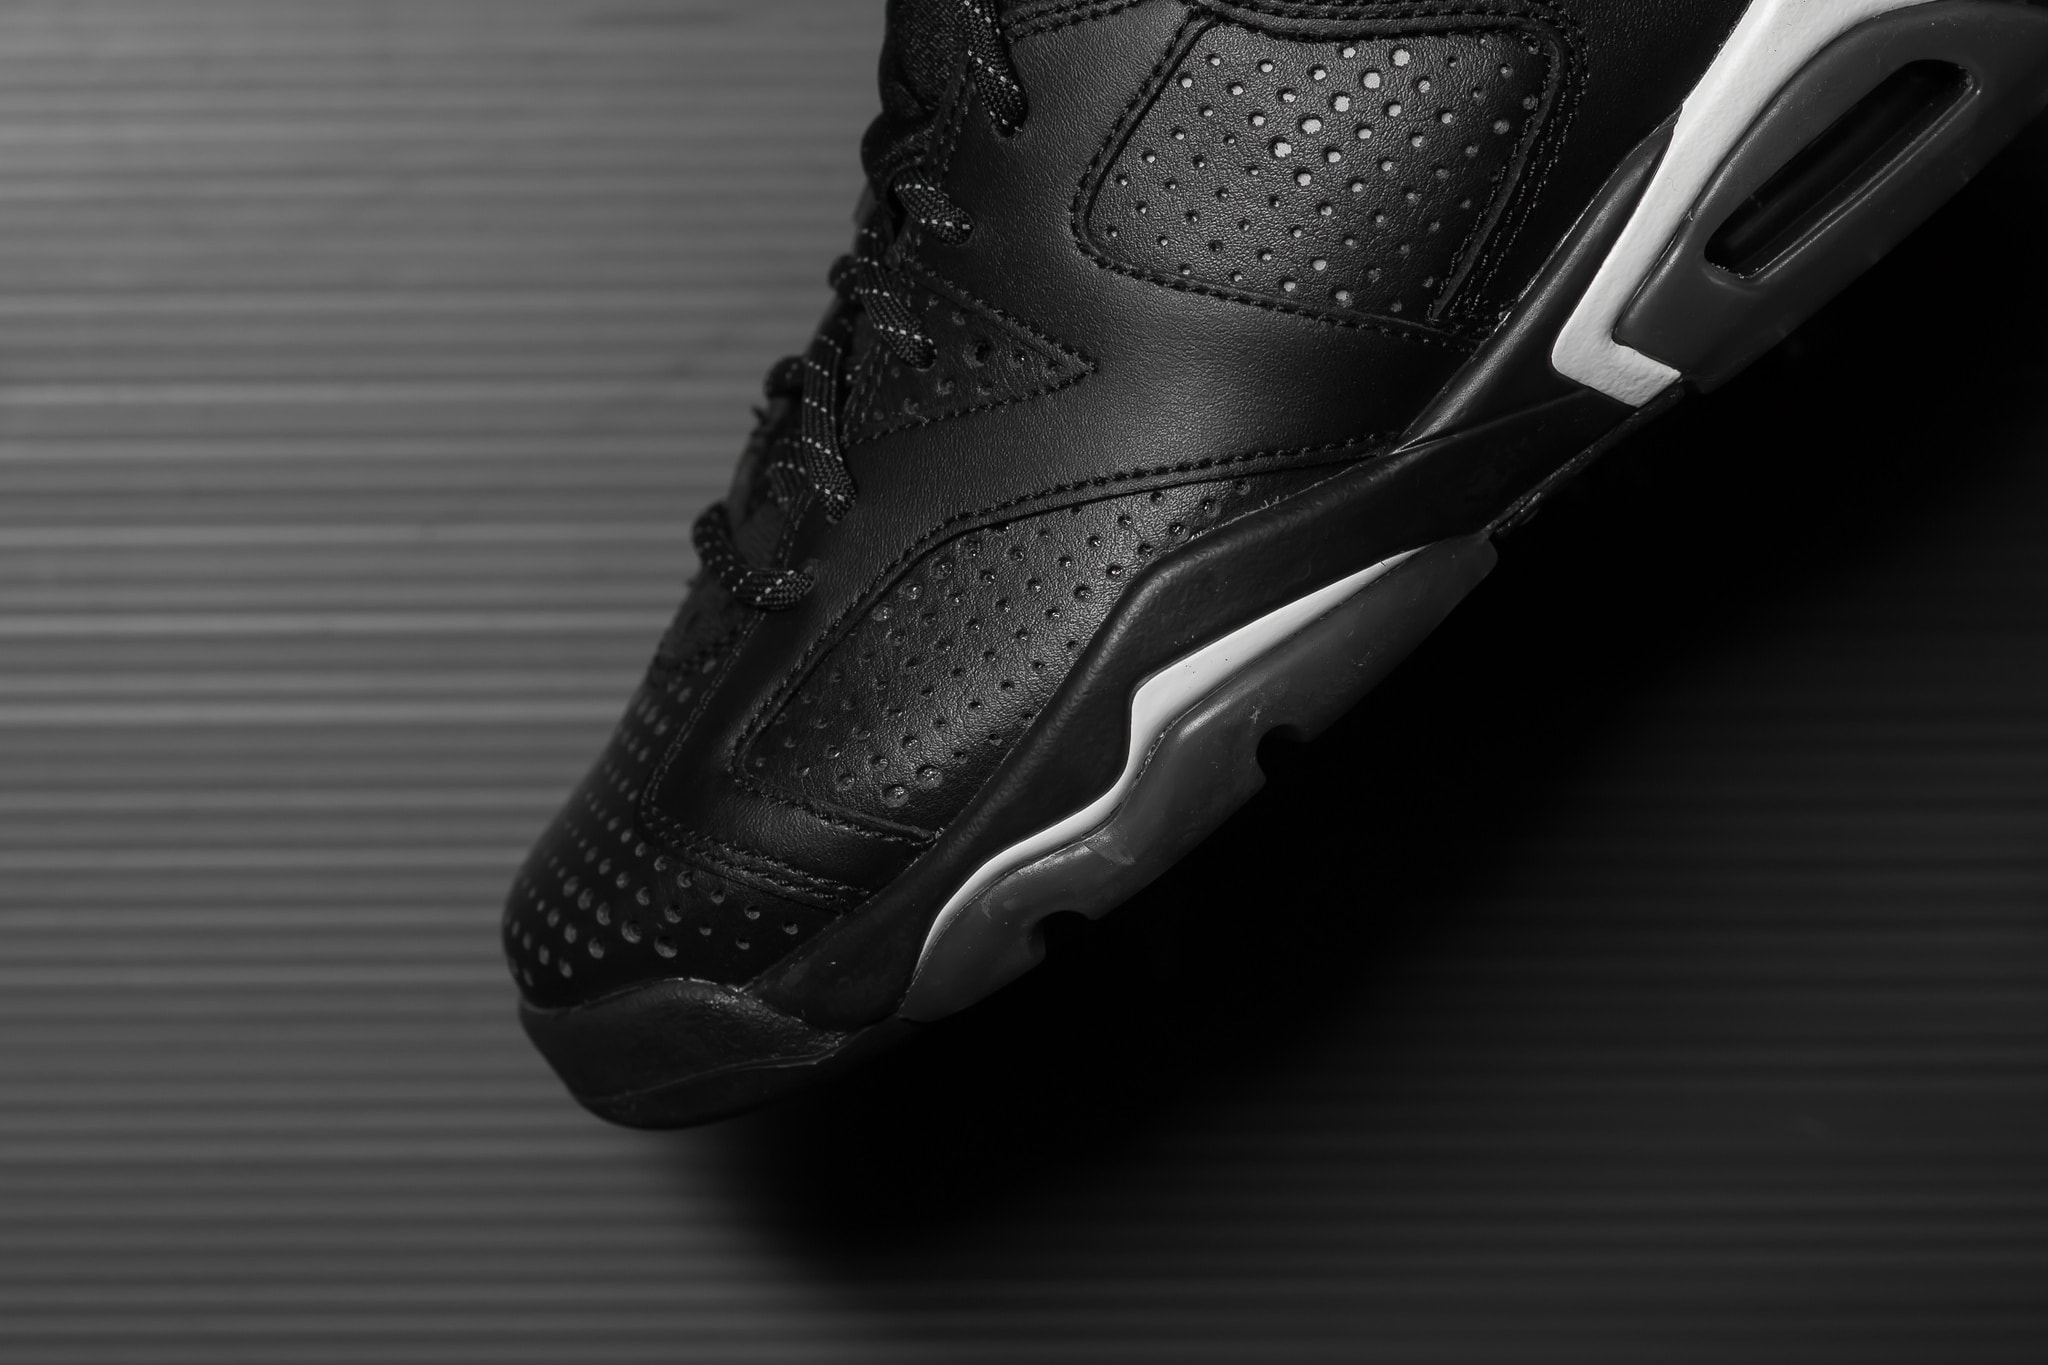 Air Jordan 6 "Black Cat" Closer Look